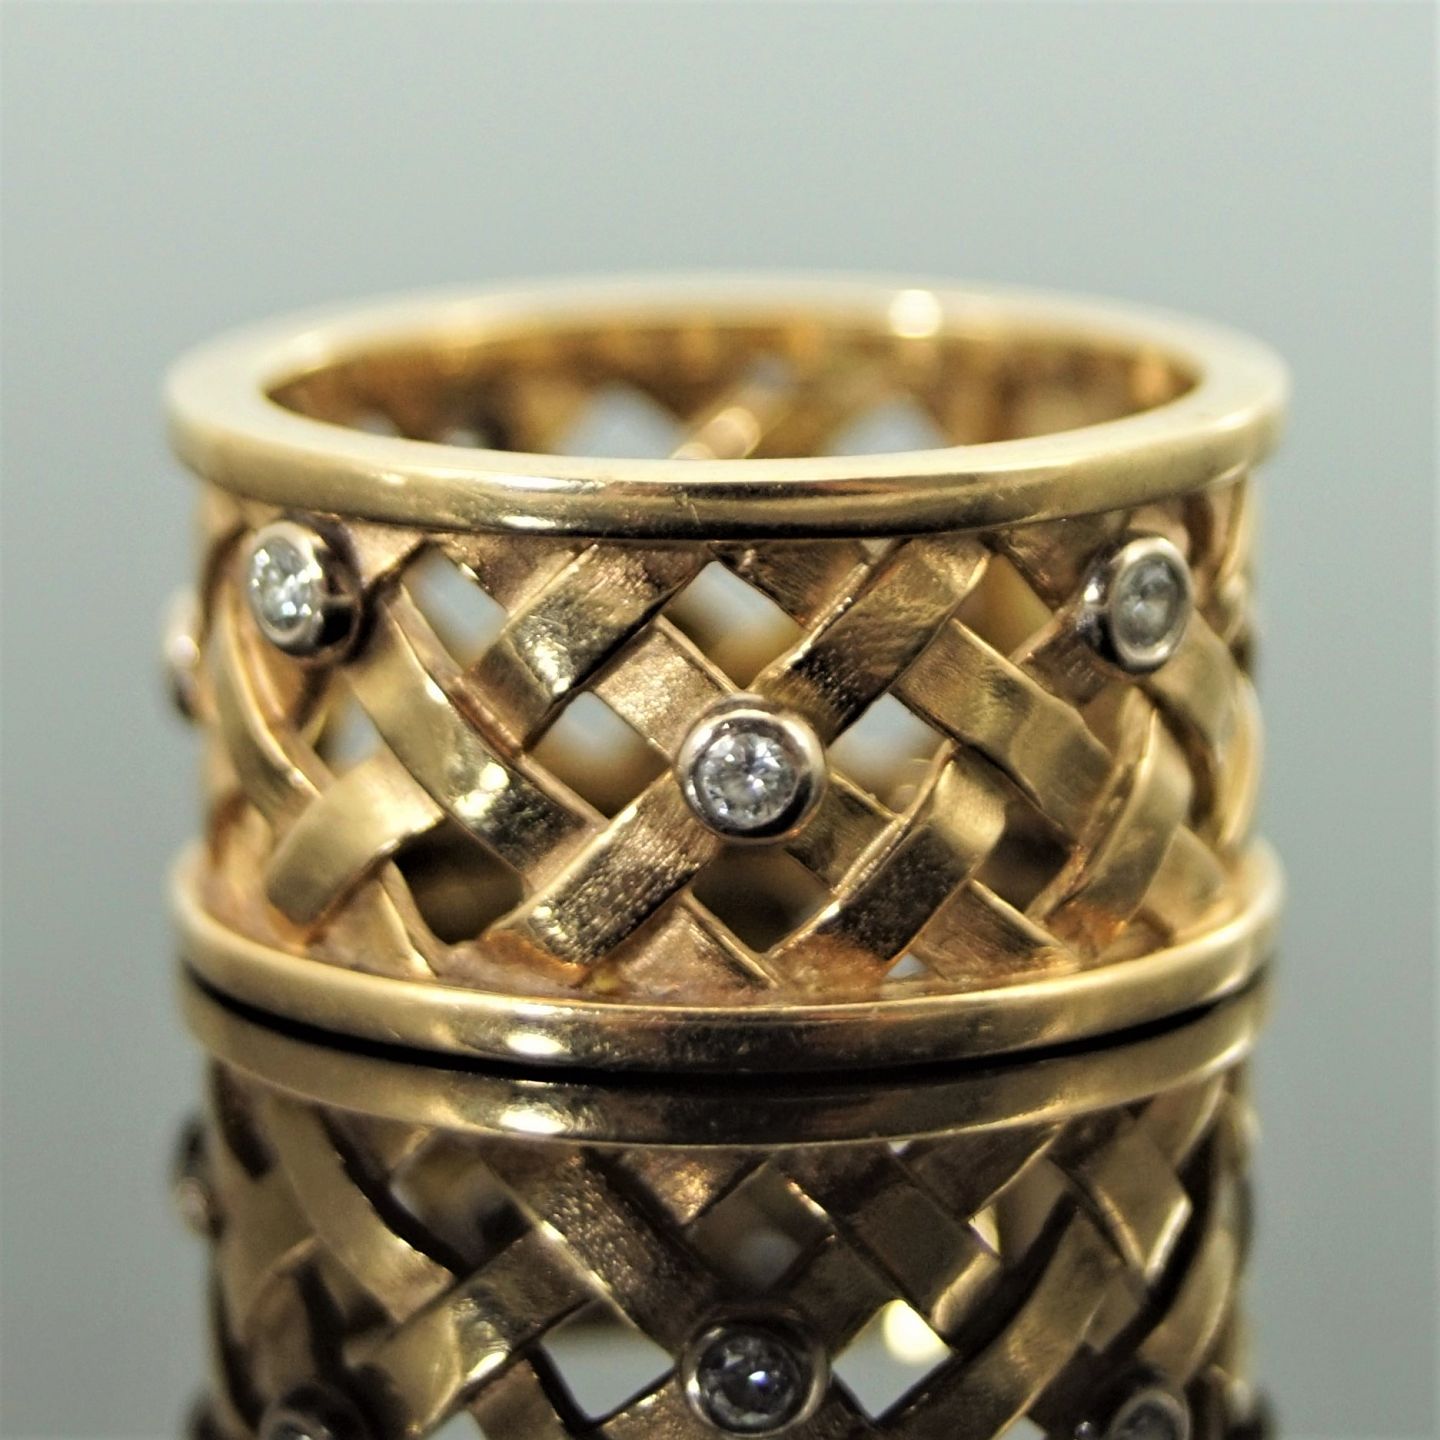 www.Antikvitet.net - Ole Lynggaard; Smal fletring ring af 14 kt. guld med diamanter fattet hvidguld